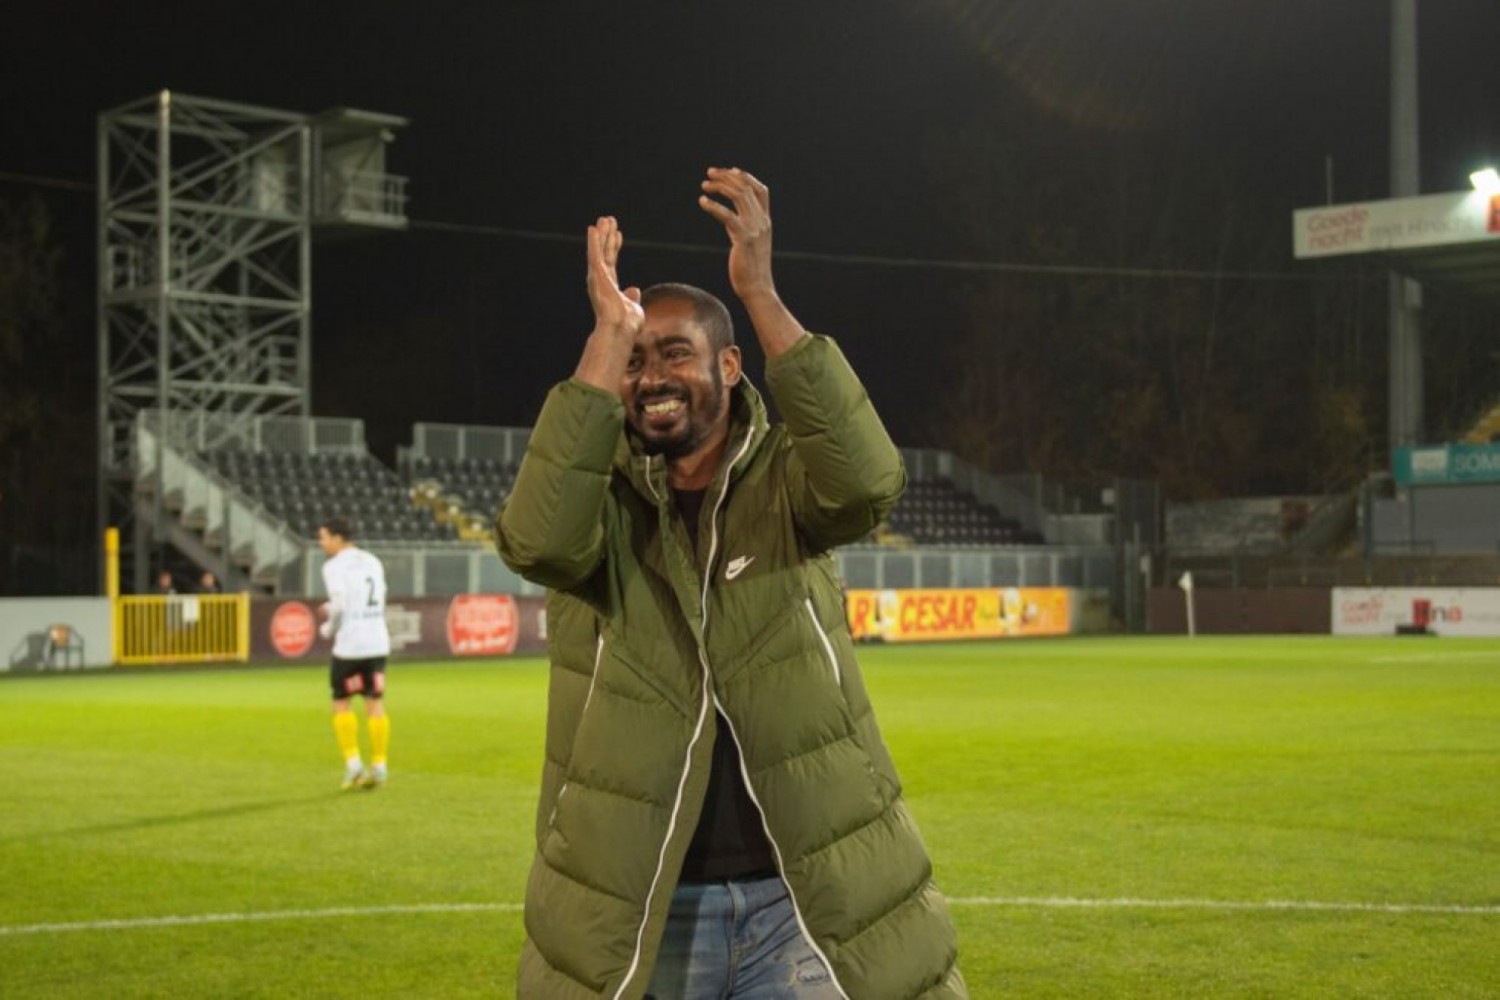 Côte d'Ivoire-Belgique : Copa Barry nouvel entraîneur des gardiens de but du  Sporting Lokeren – Temse